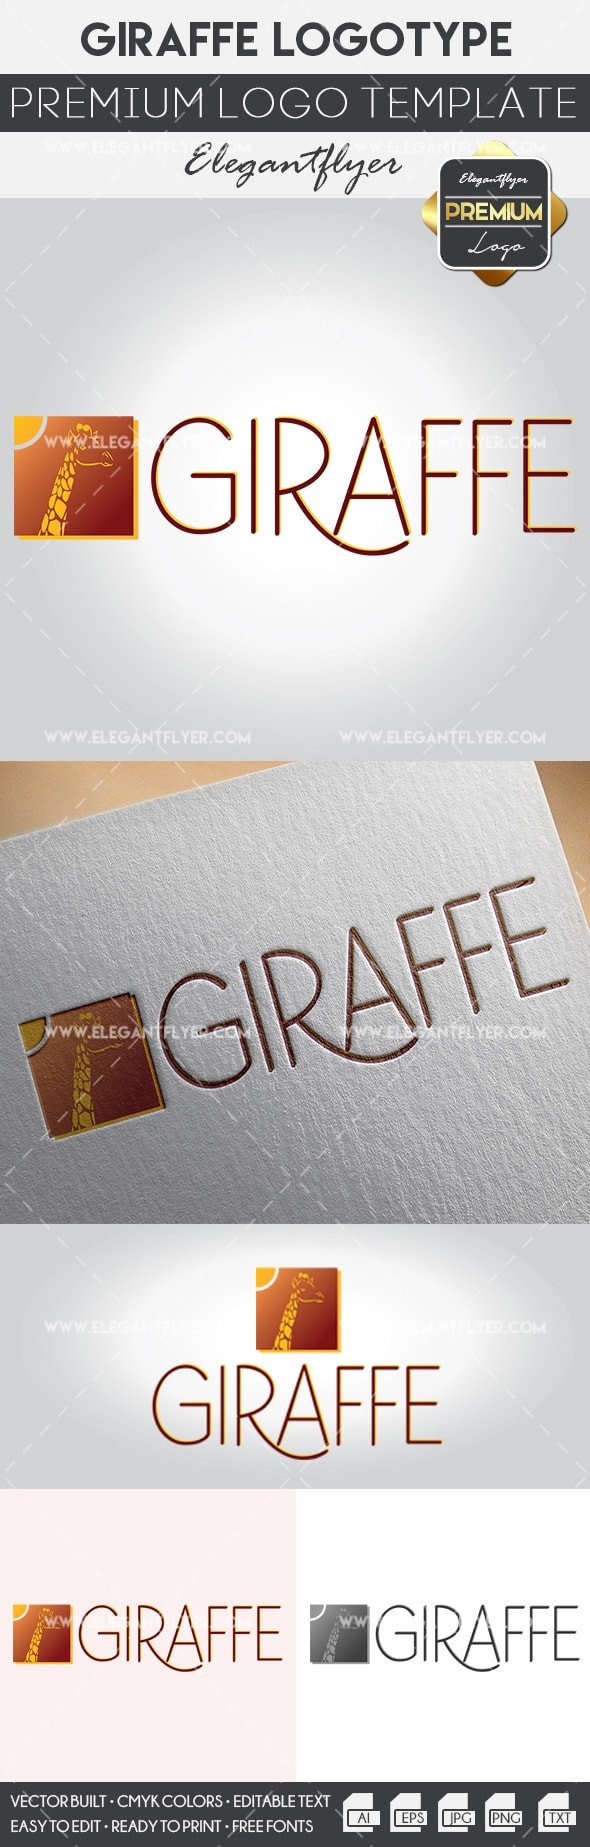 Logo Giraffa by ElegantFlyer